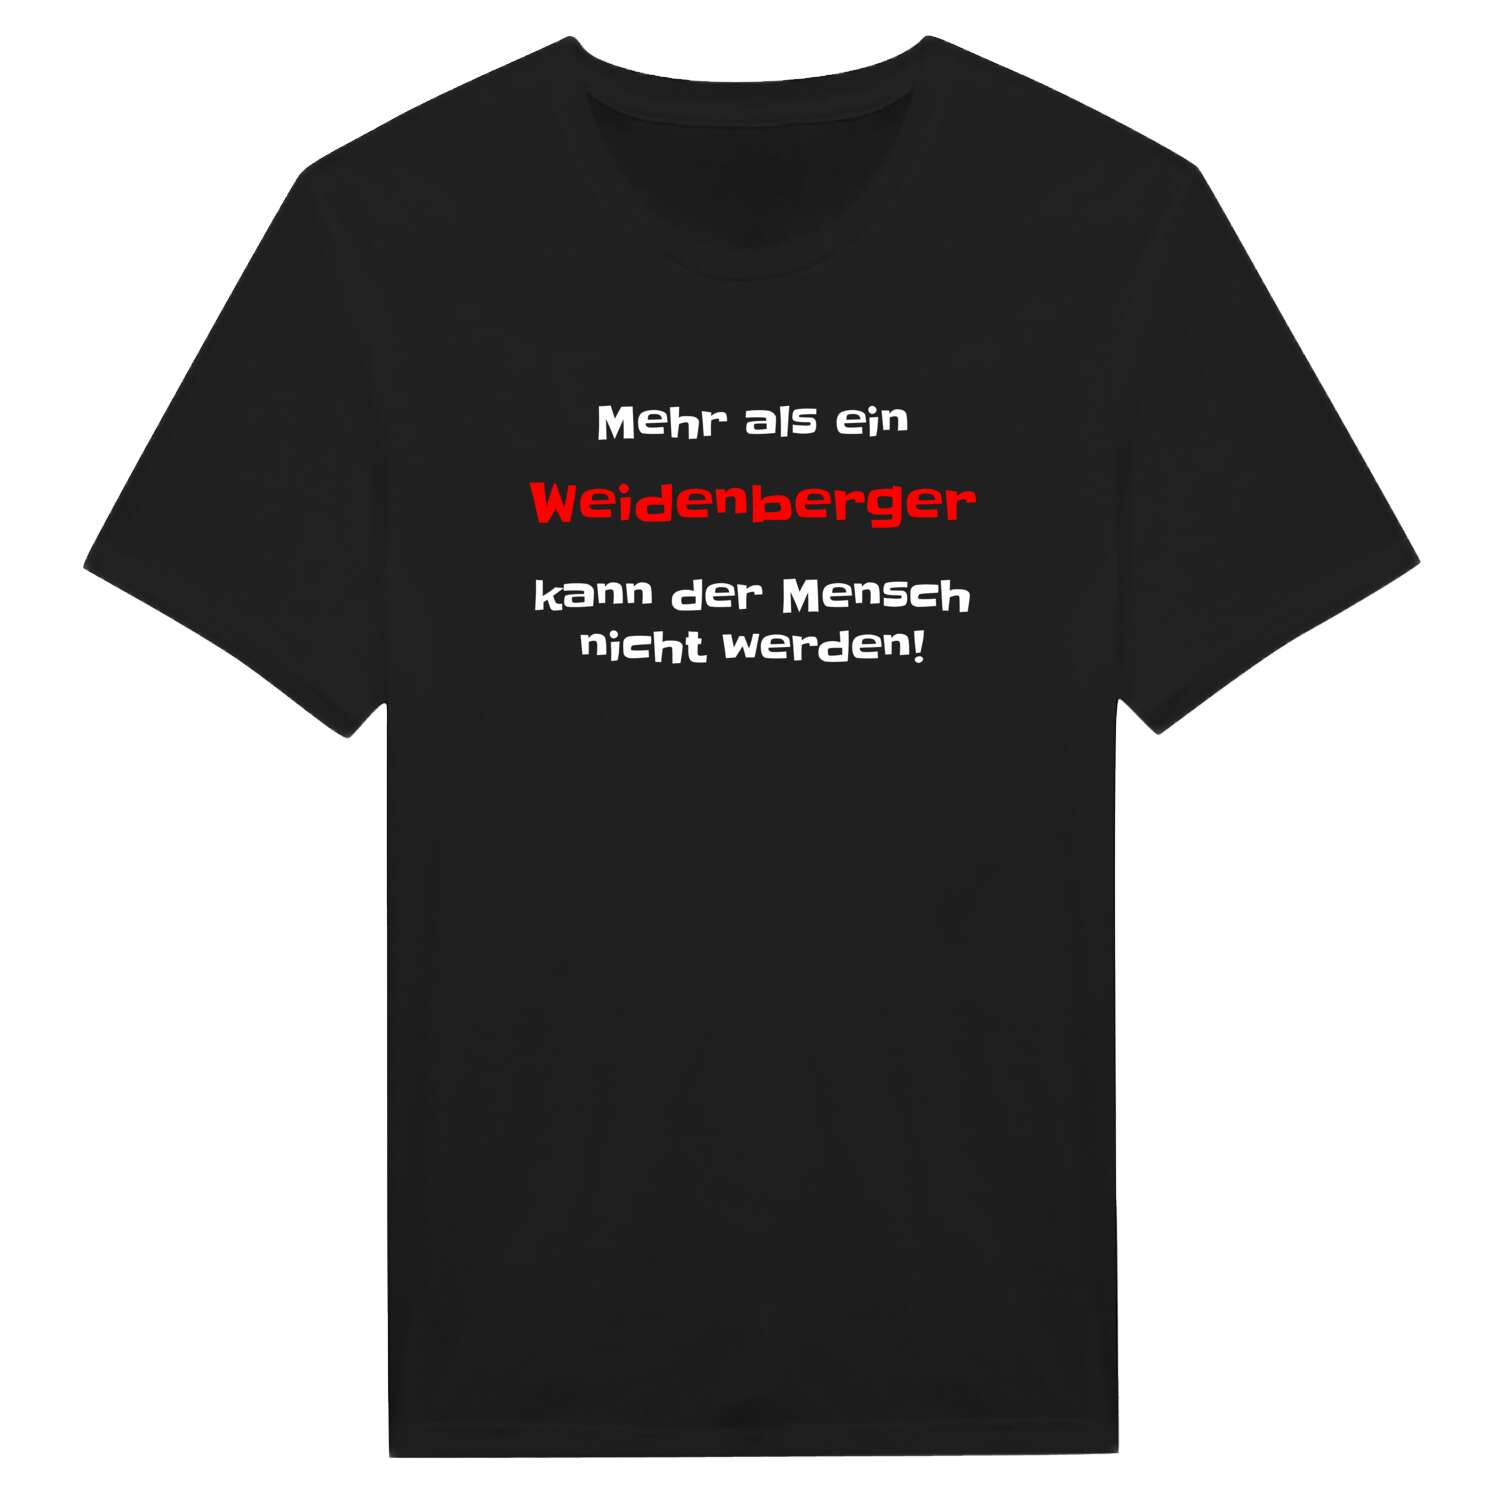 Weidenberg T-Shirt »Mehr als ein«